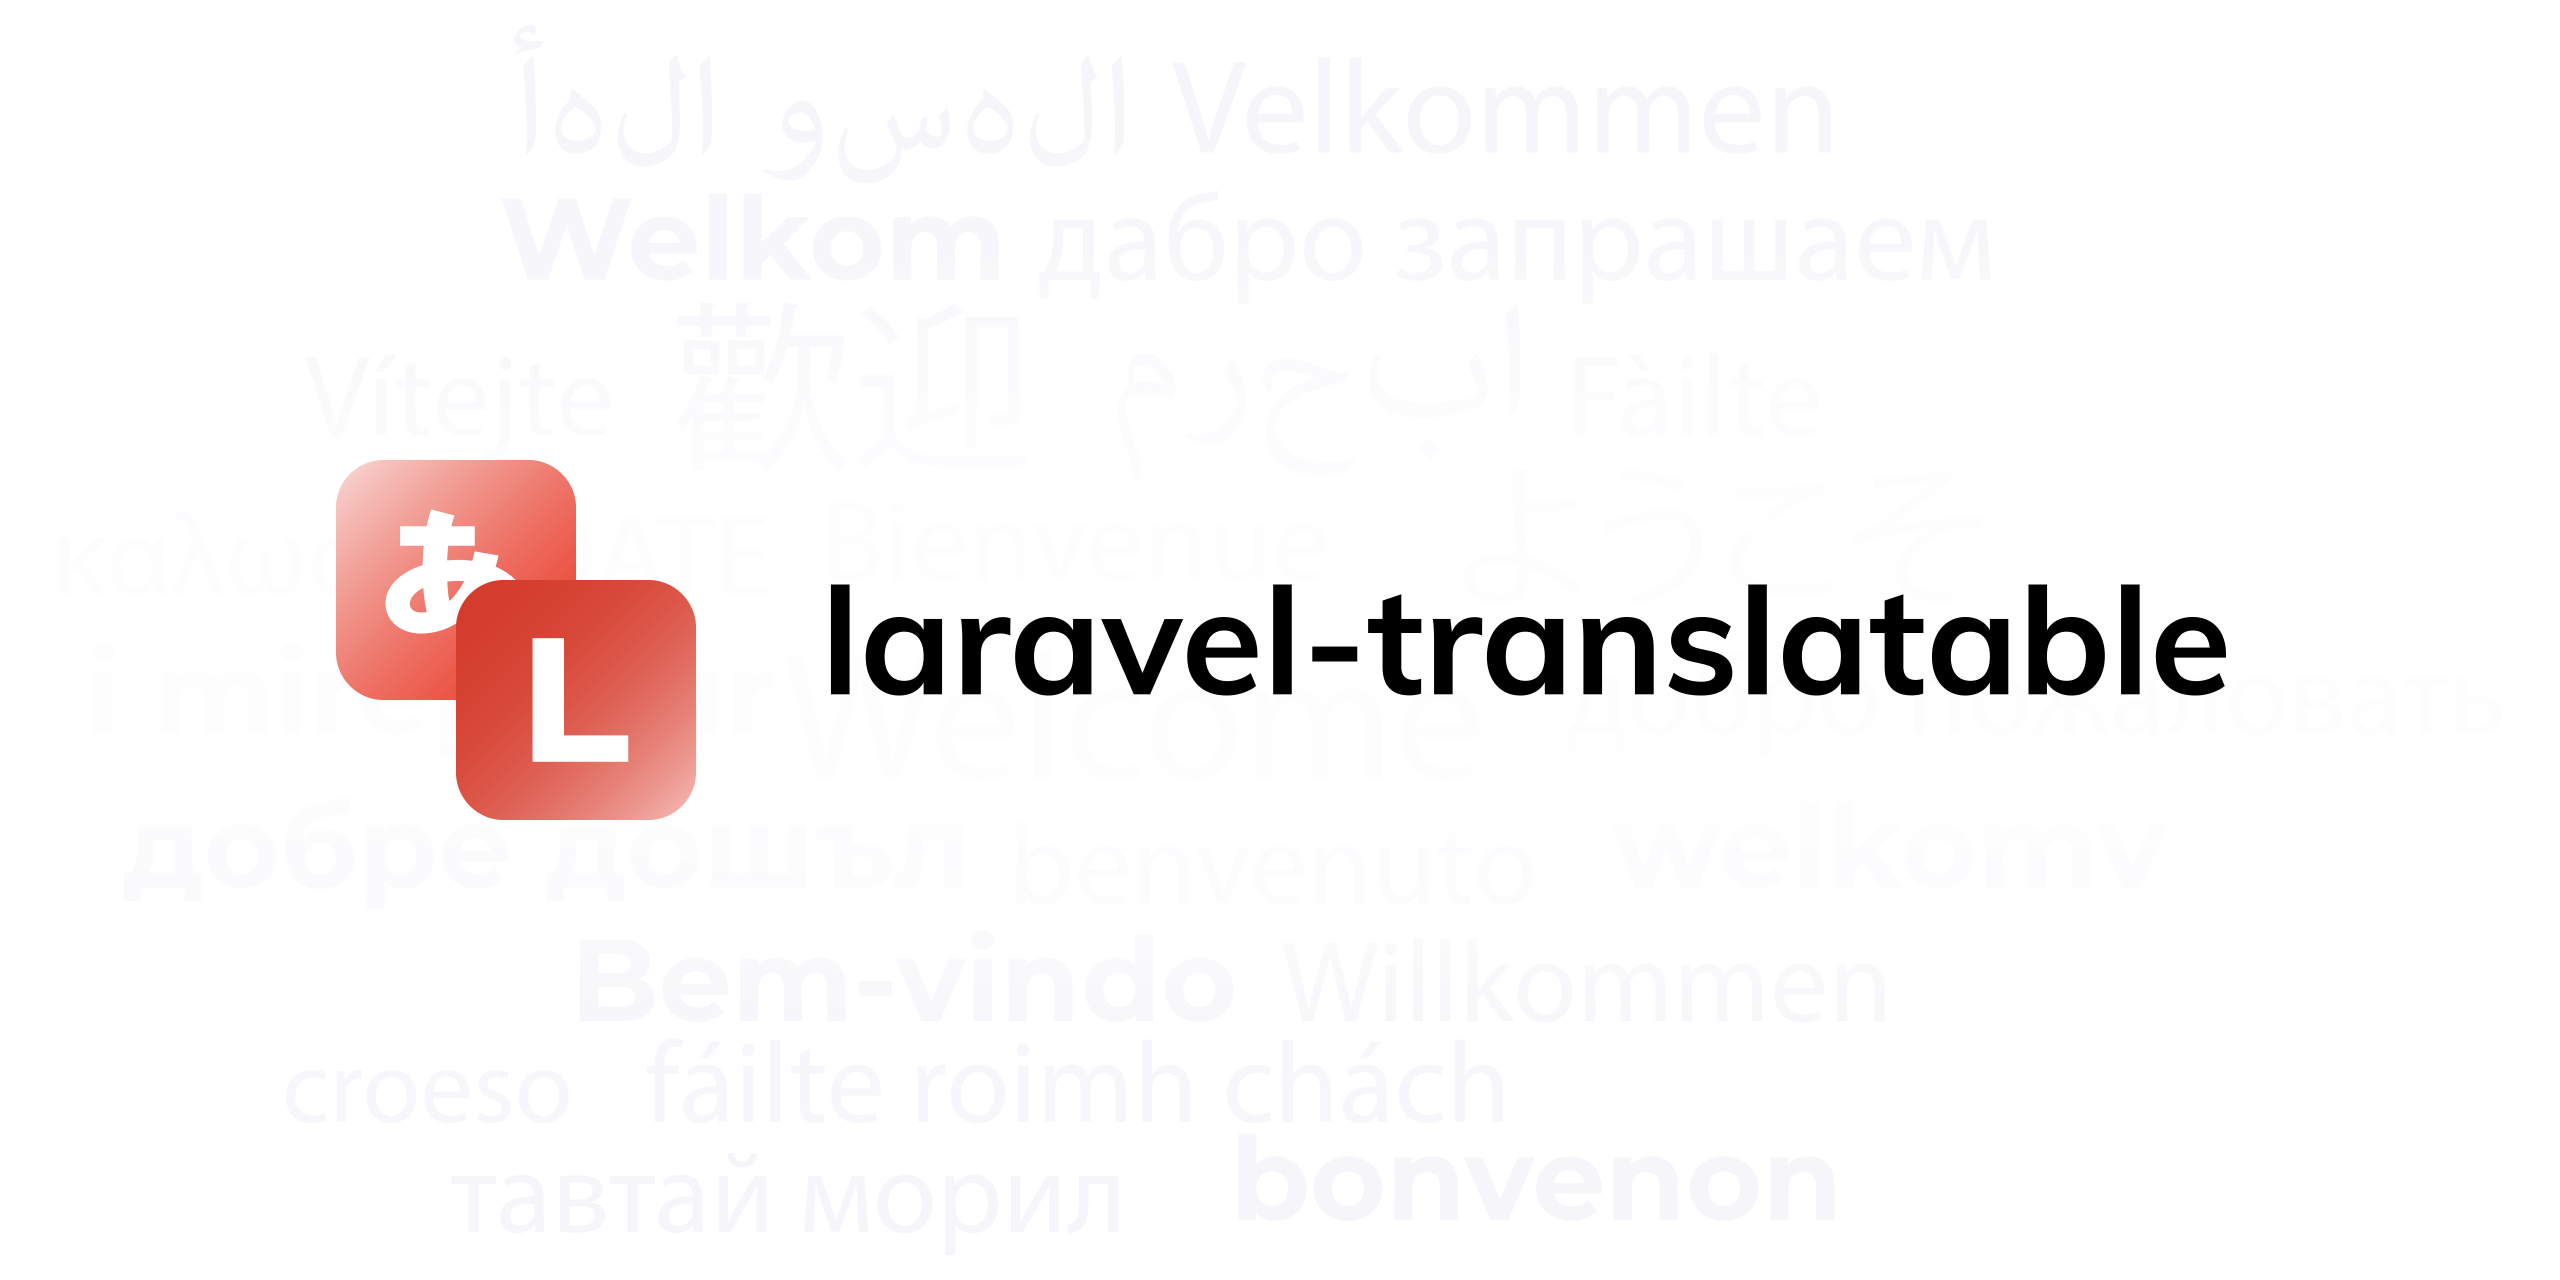 laravel-translatable socialcard